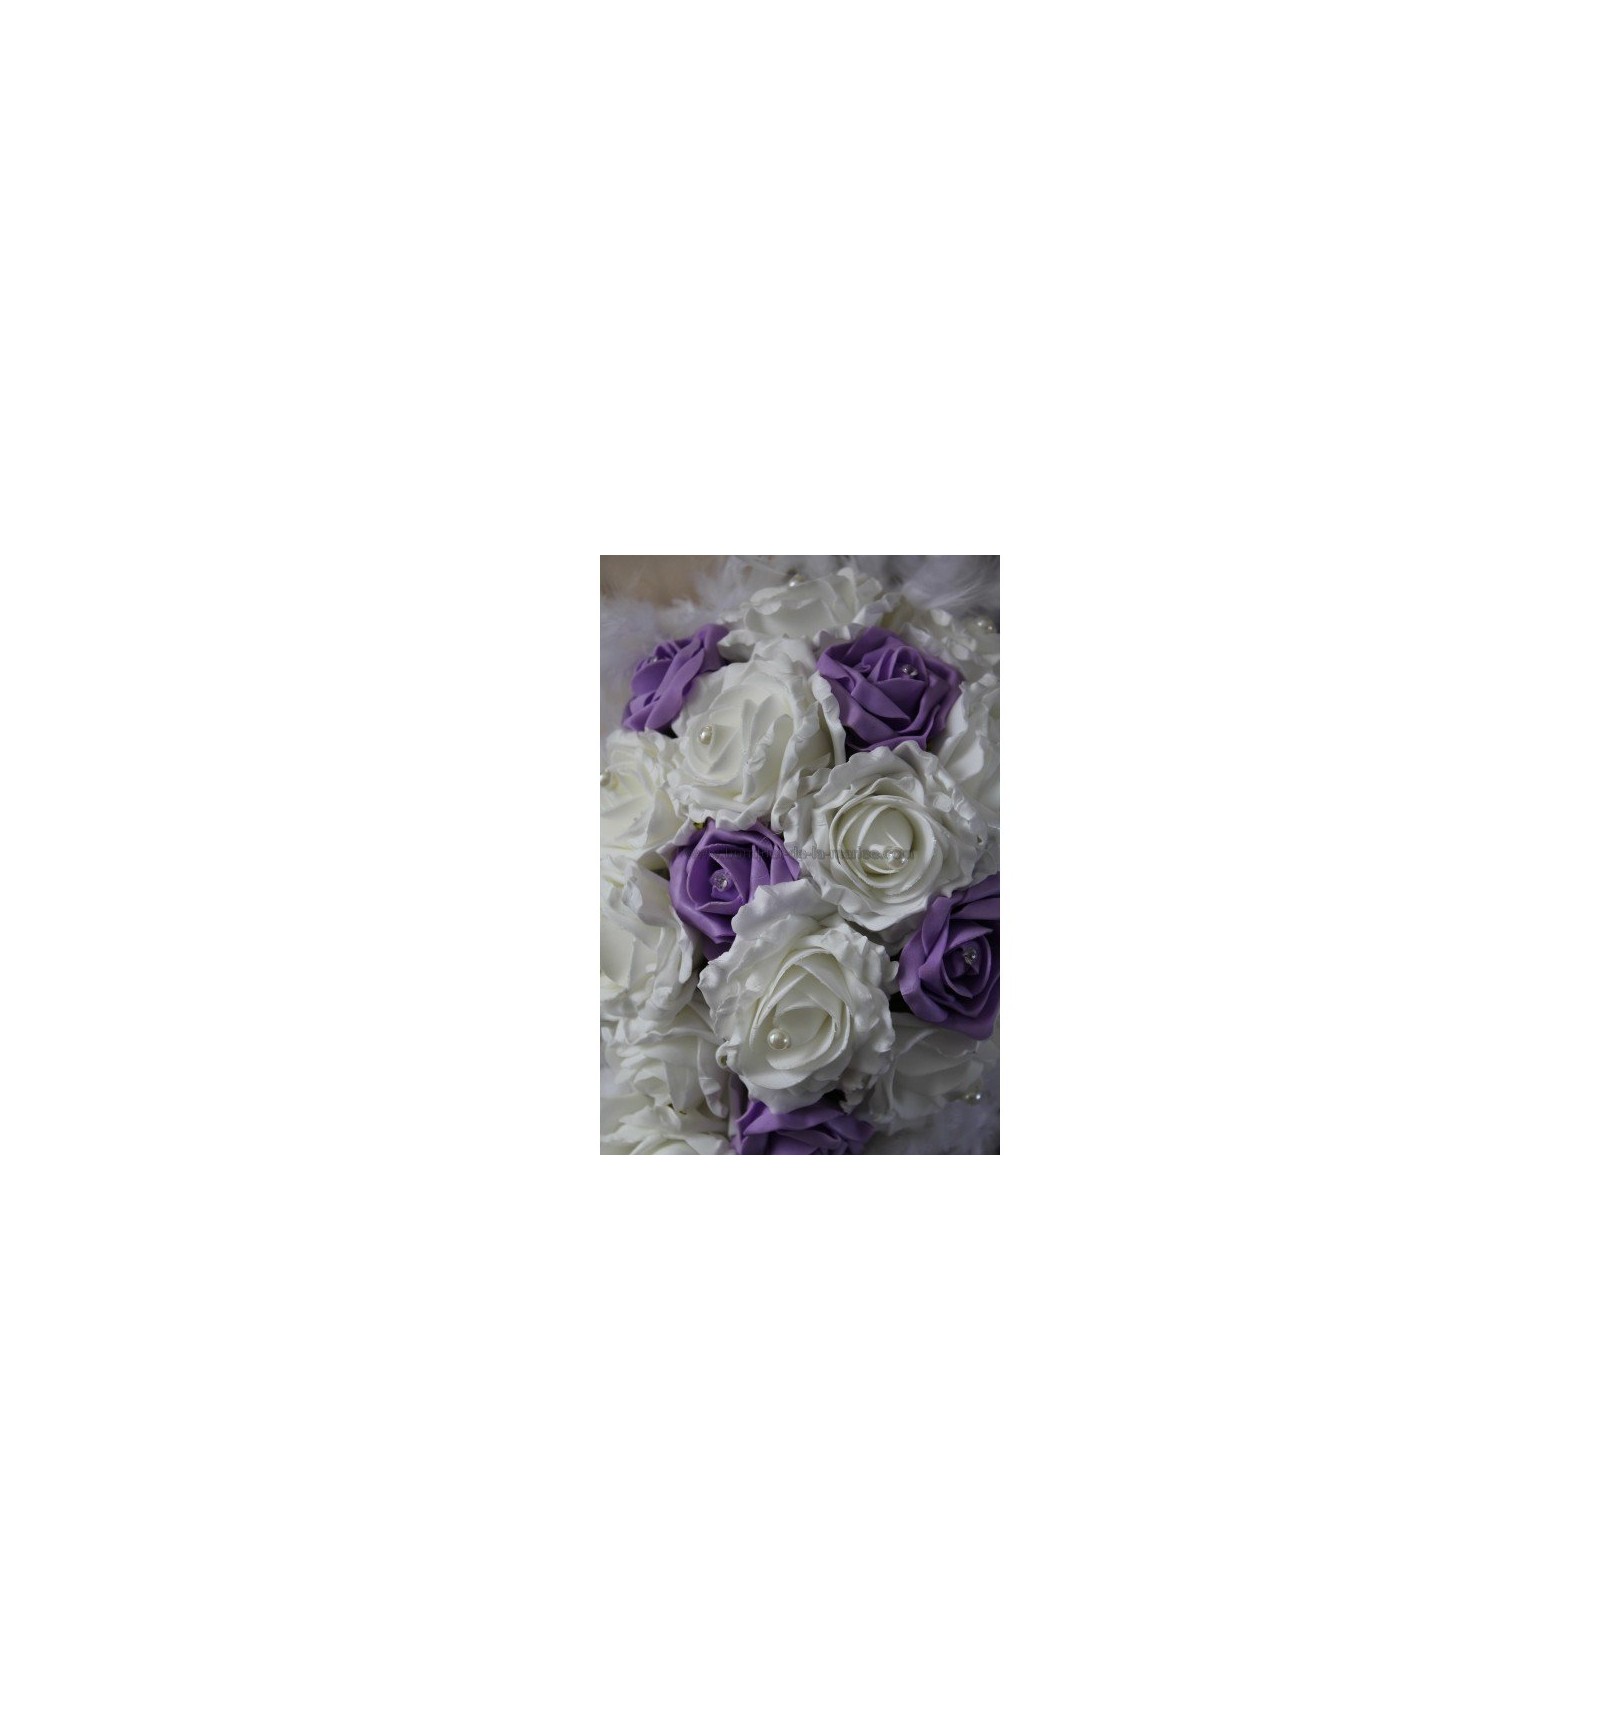 Bouquet de Mariage Cascade thème bonbons blanc, turquoise, rose vif